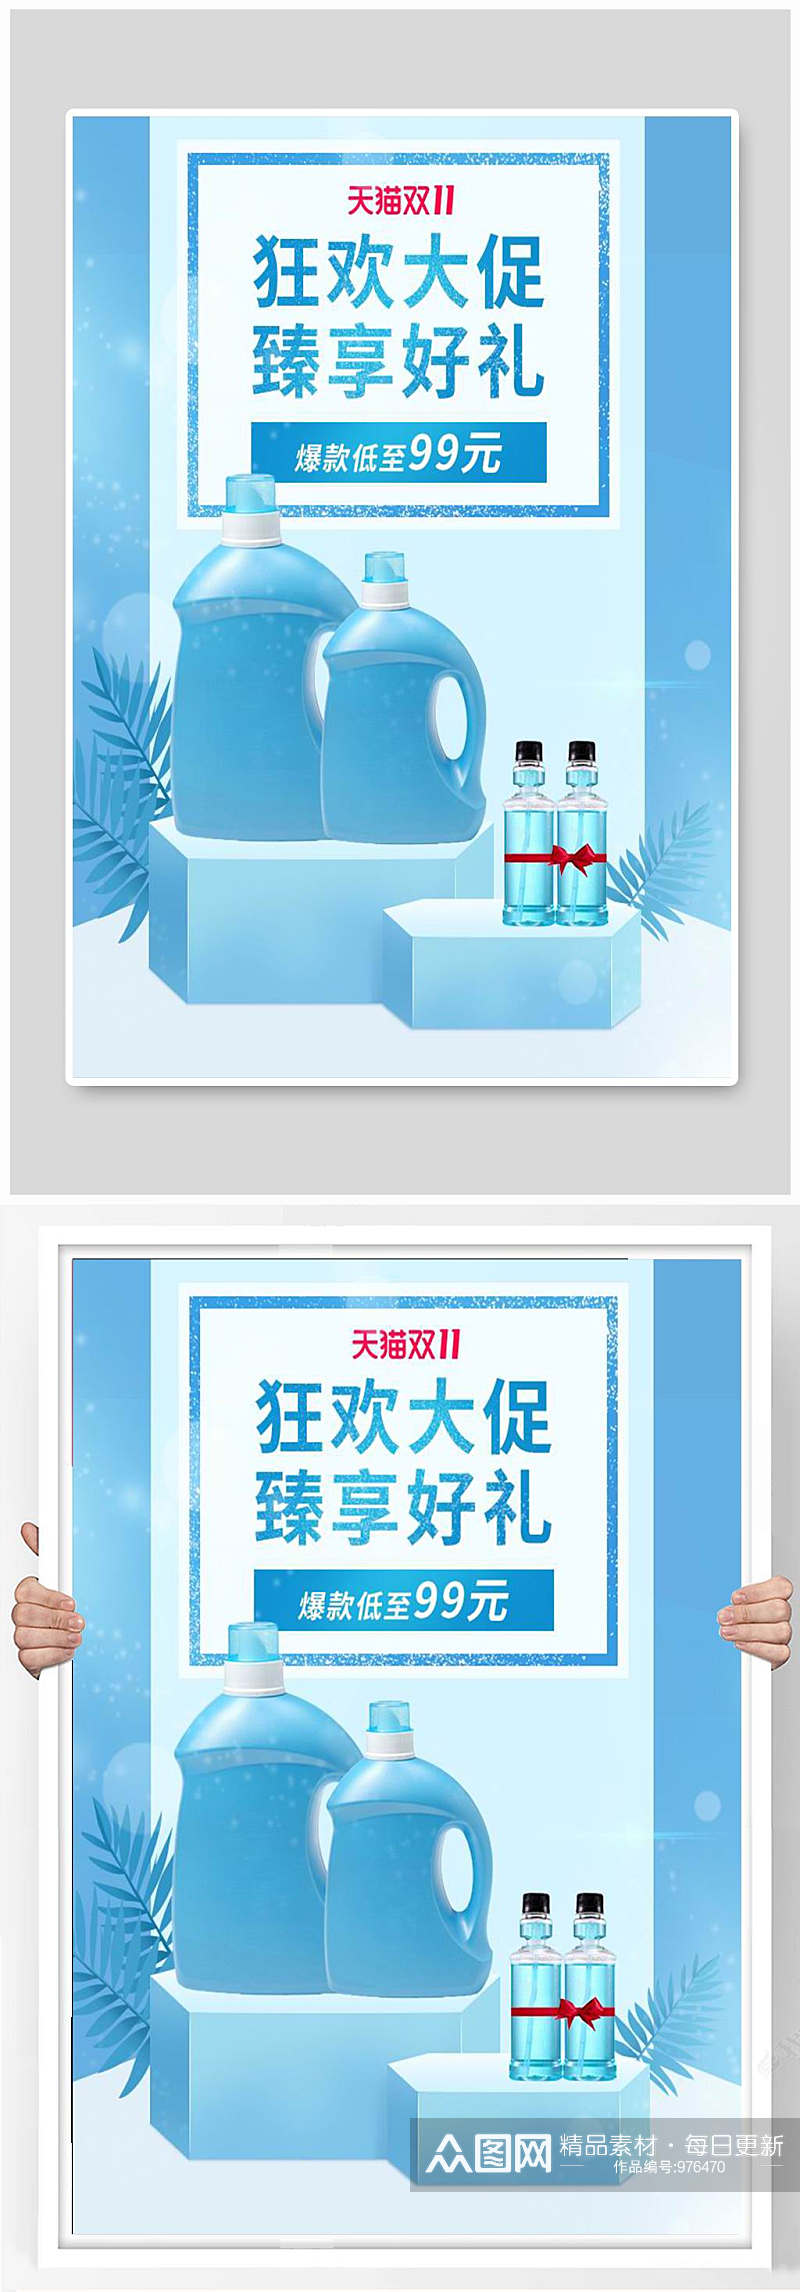 洗衣液宣传海报设计素材